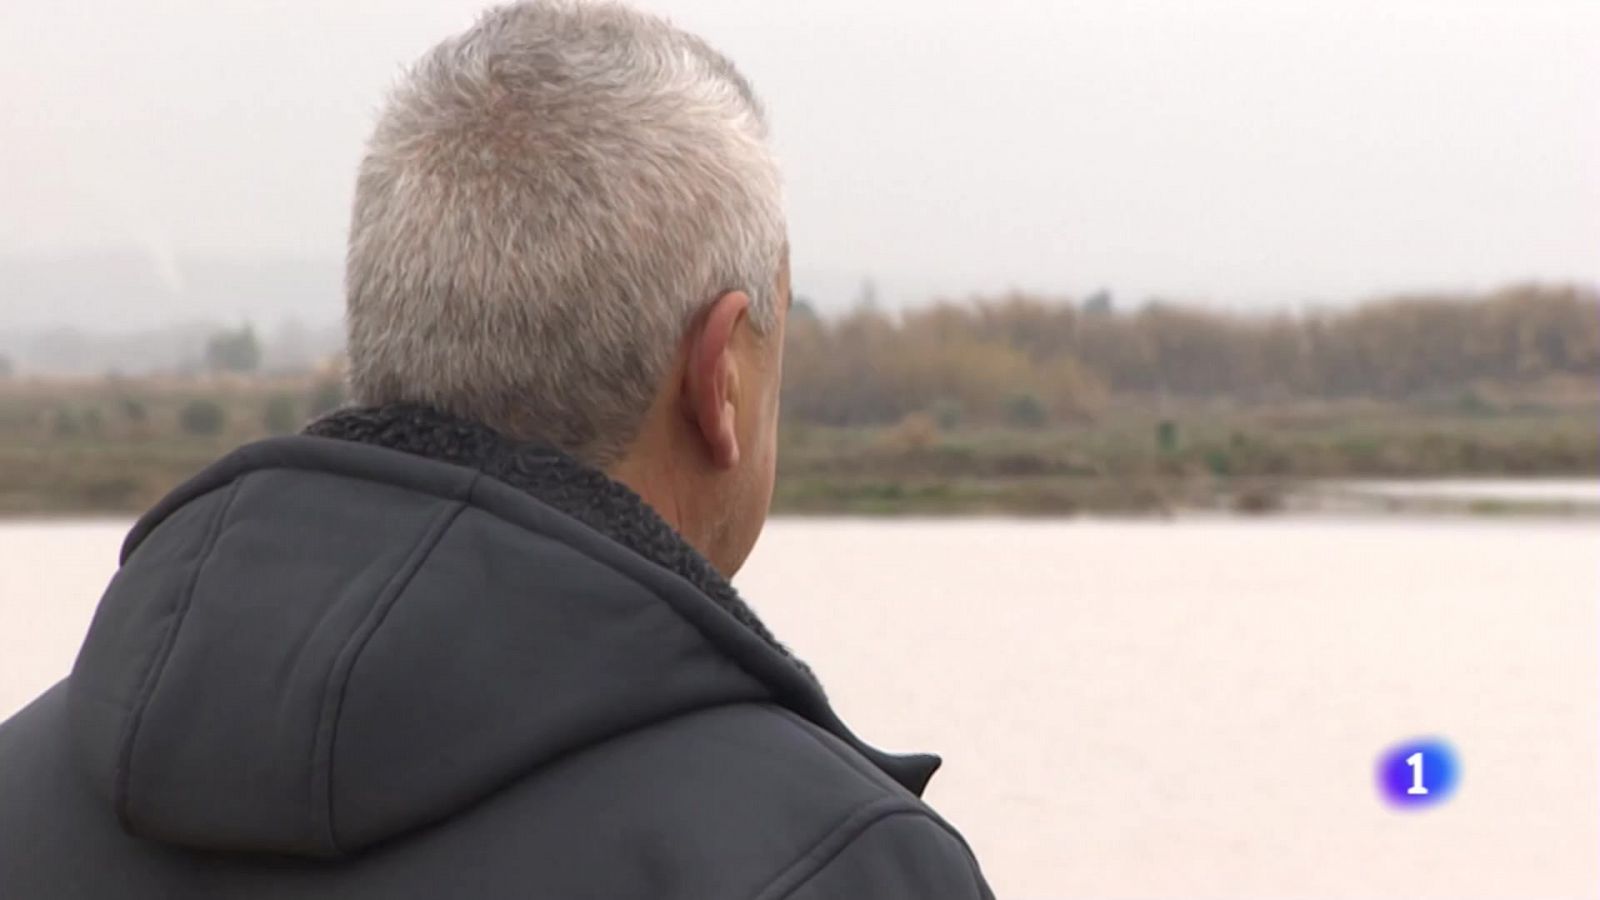 "No podemos aguantar una riada cada tres años", testimonio de un agricultor de la Ribera del Ebro